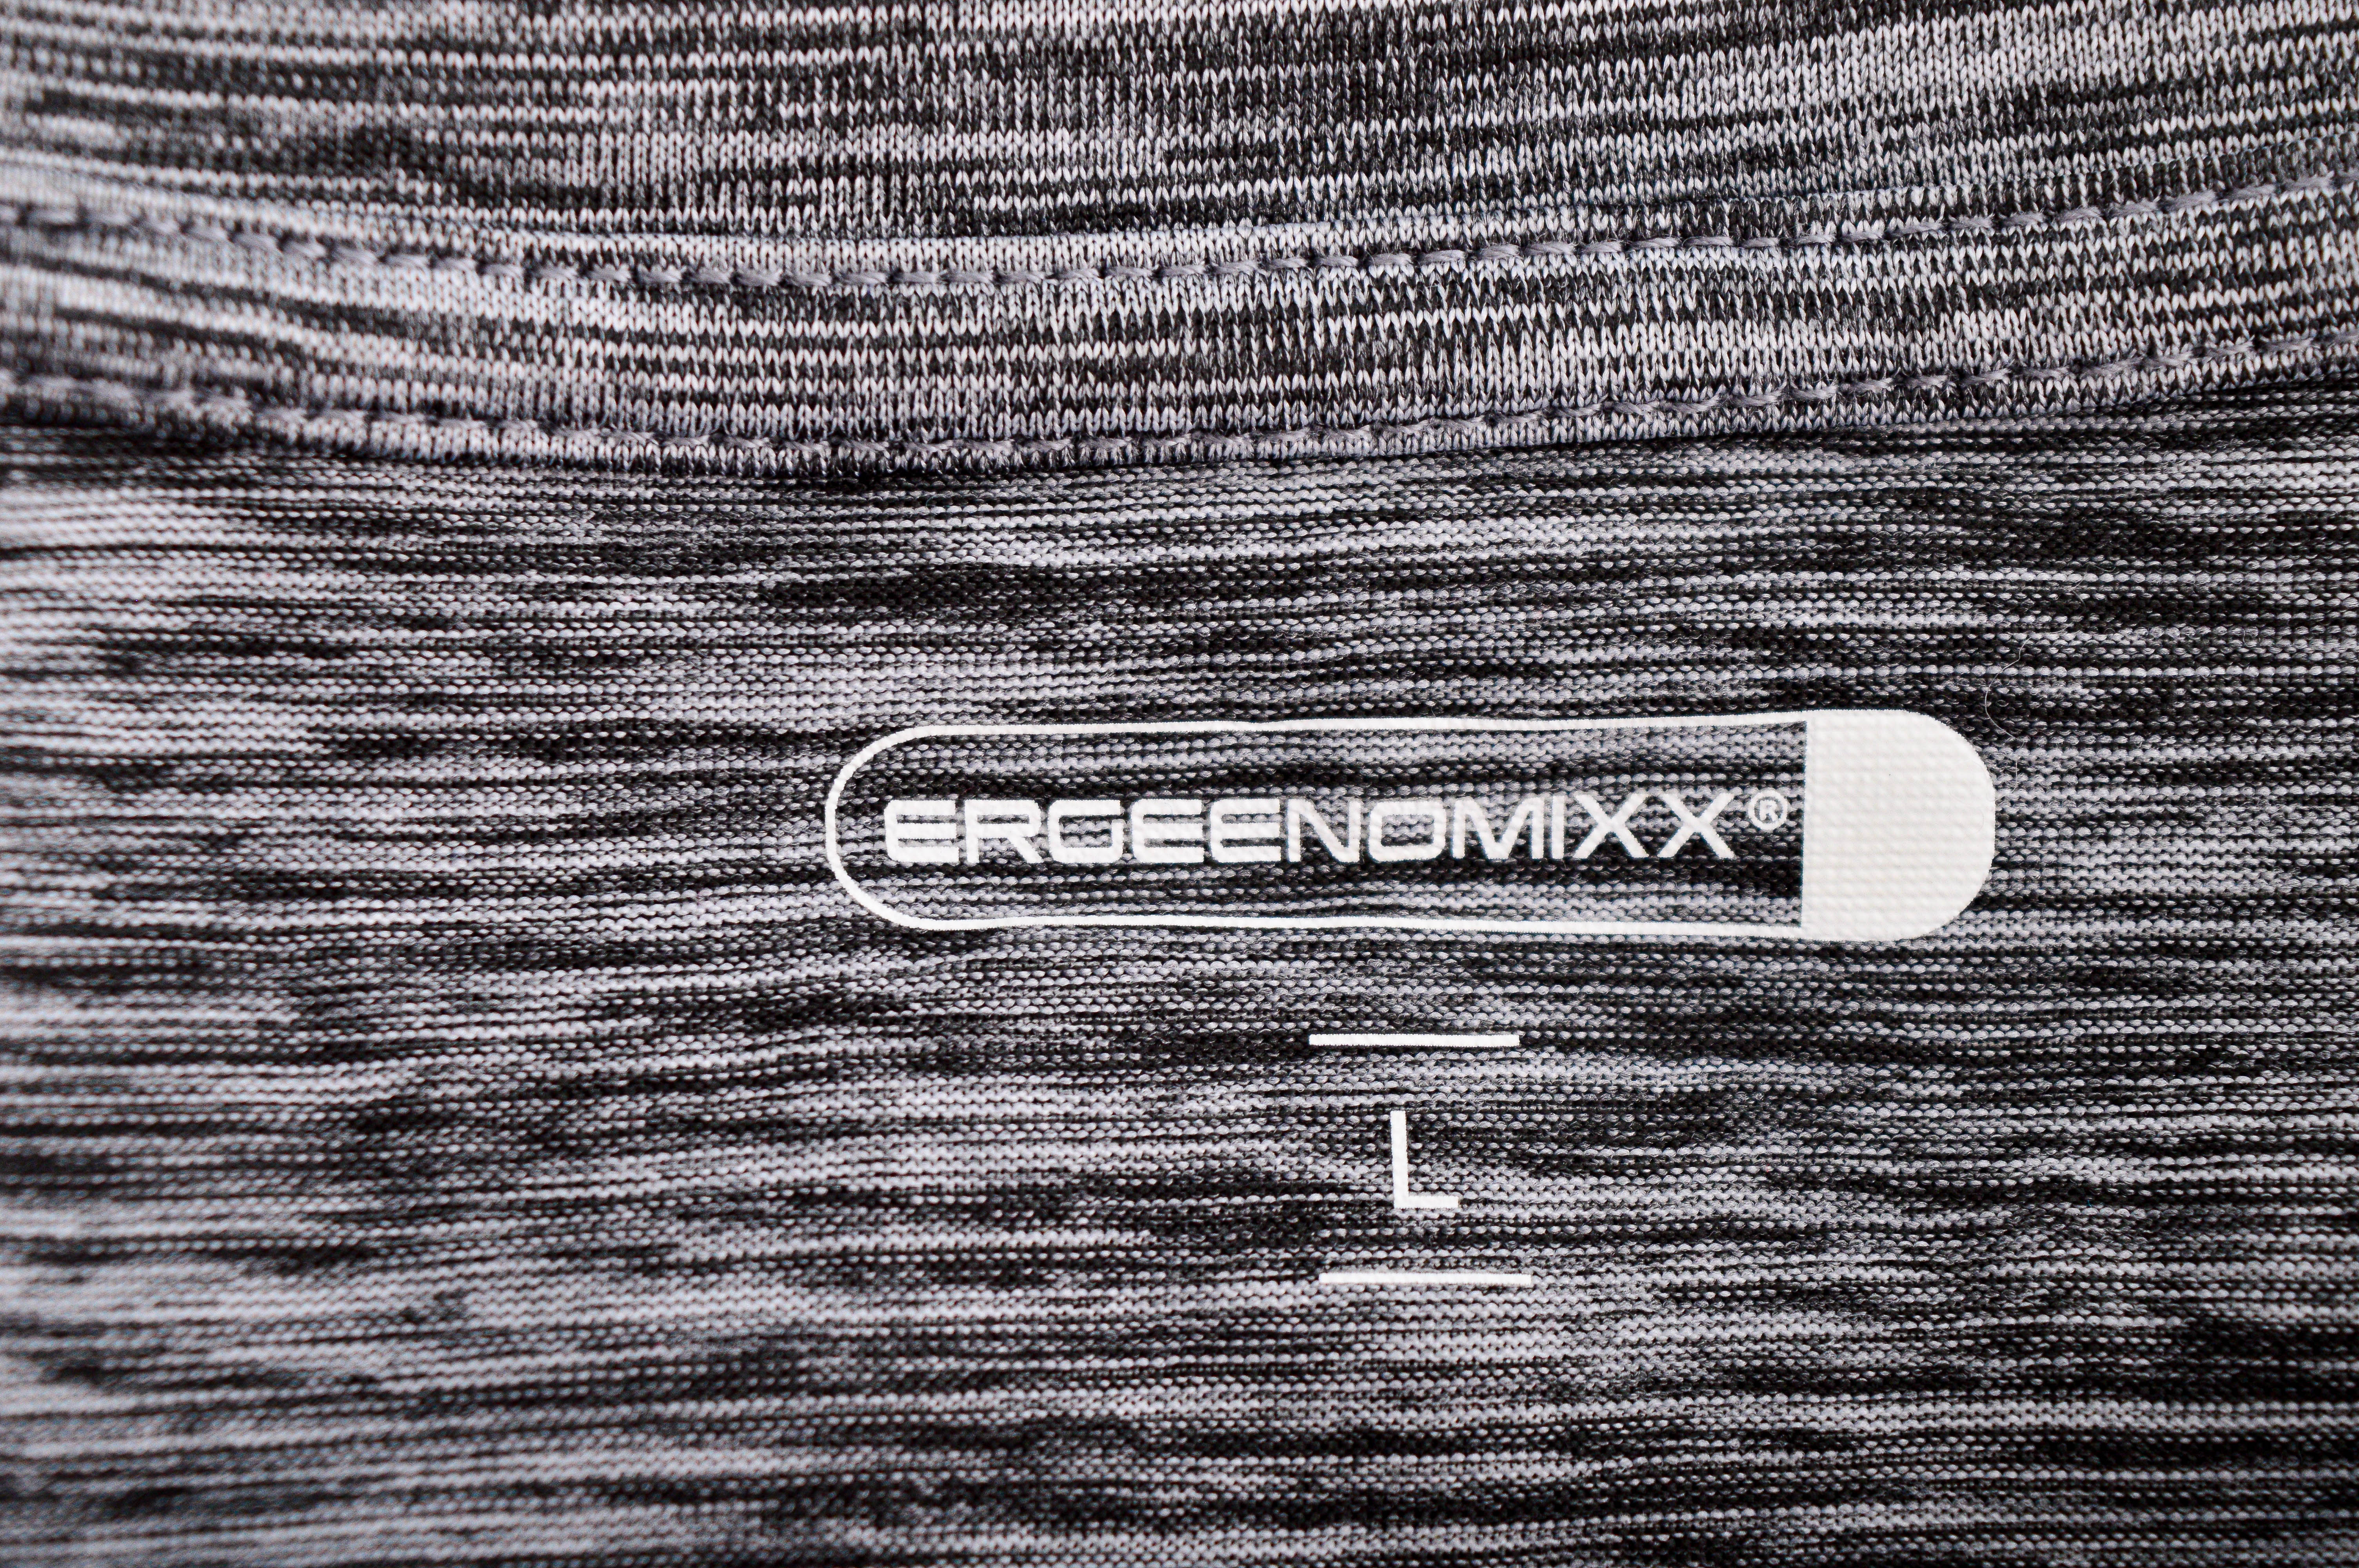 Men's blouse - ERGEENOMIXX - 2